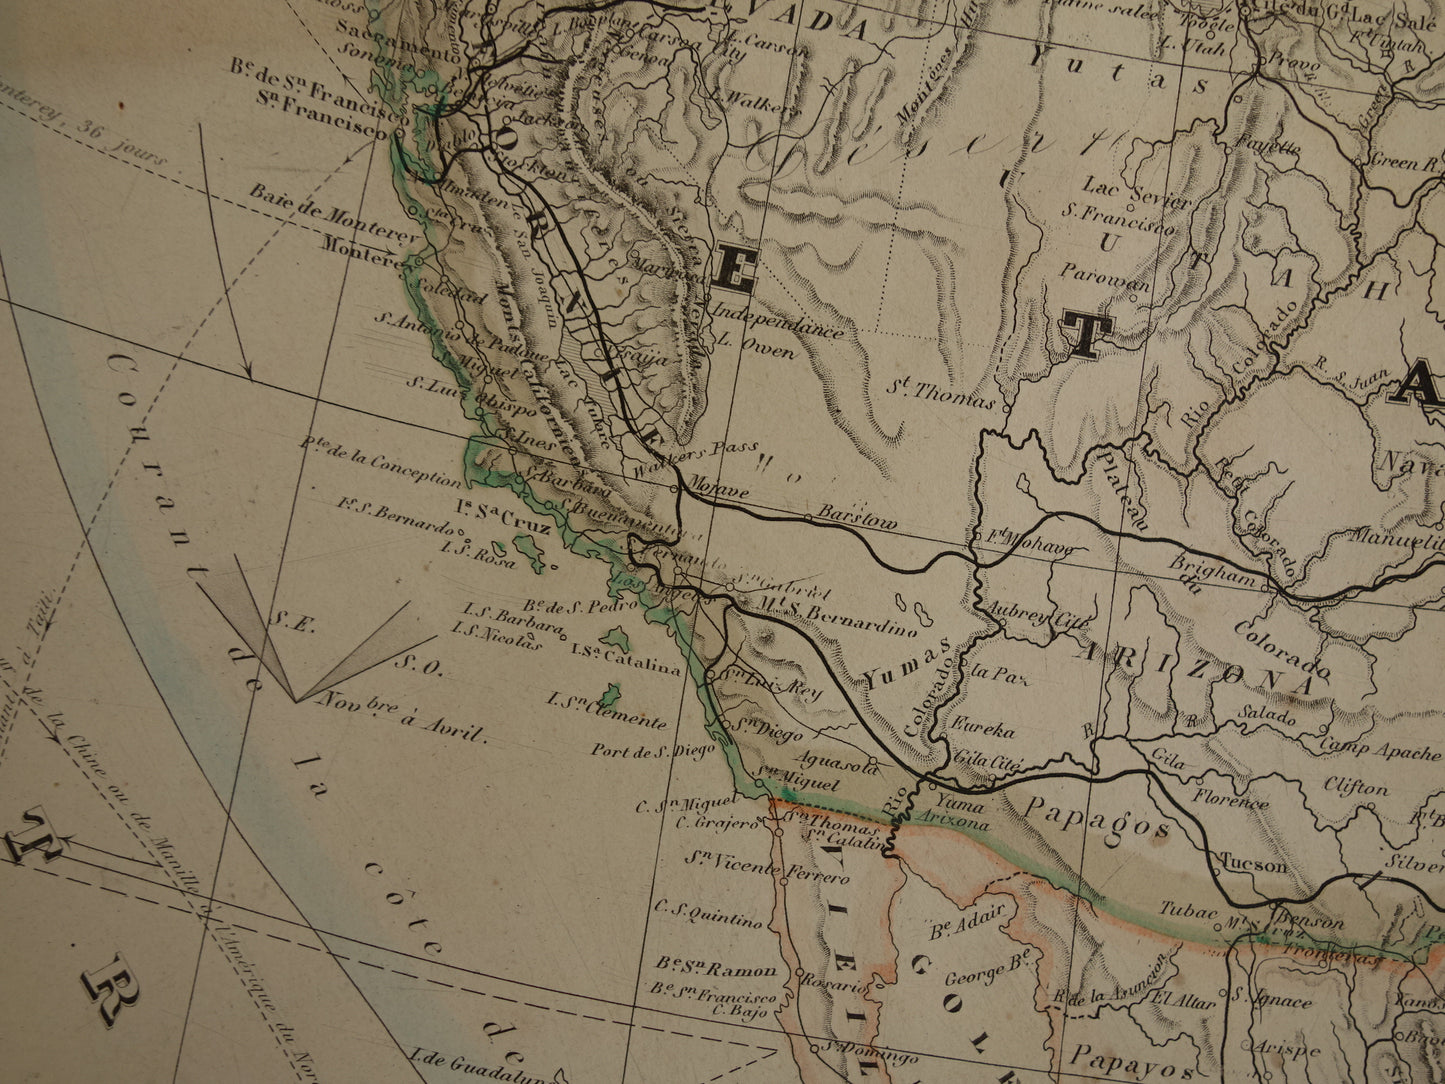 NOORD-AMERIKA grote oude kaart van VS Canada Mexico 140+ jaar oude landkaart van continent uit 1880 (circa) - originele vintage historische kaarten